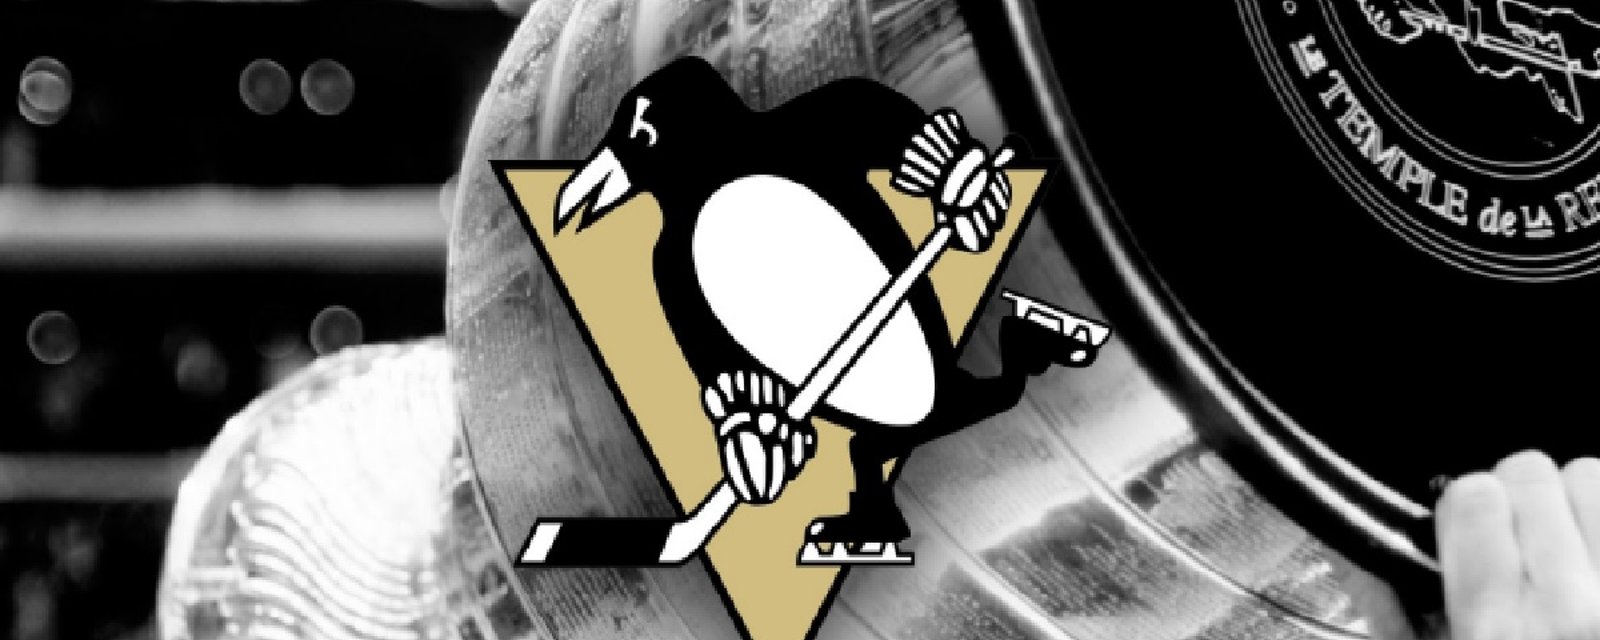 Annonce surprise chez les Penguins avant leur match #7!